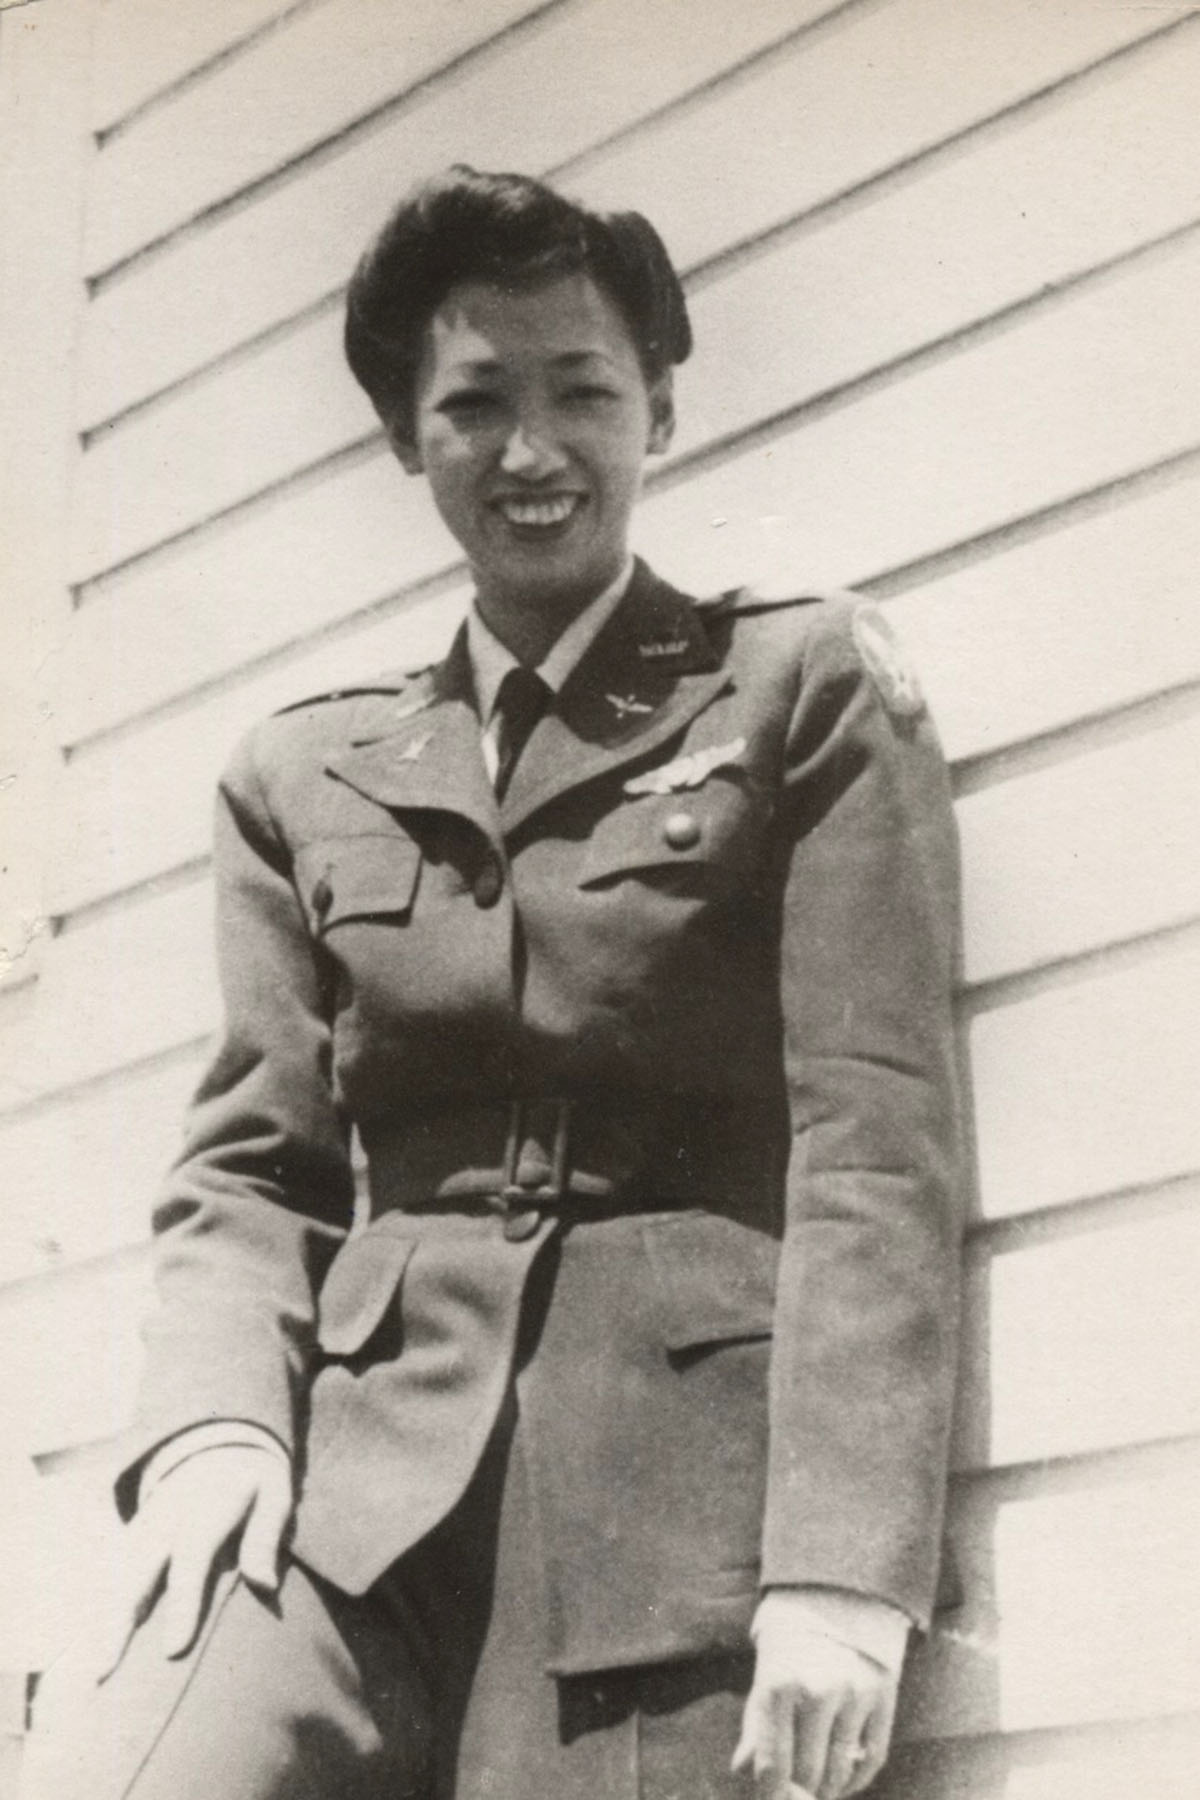 portrait of Hazel Ying Lee smiling in uniform.